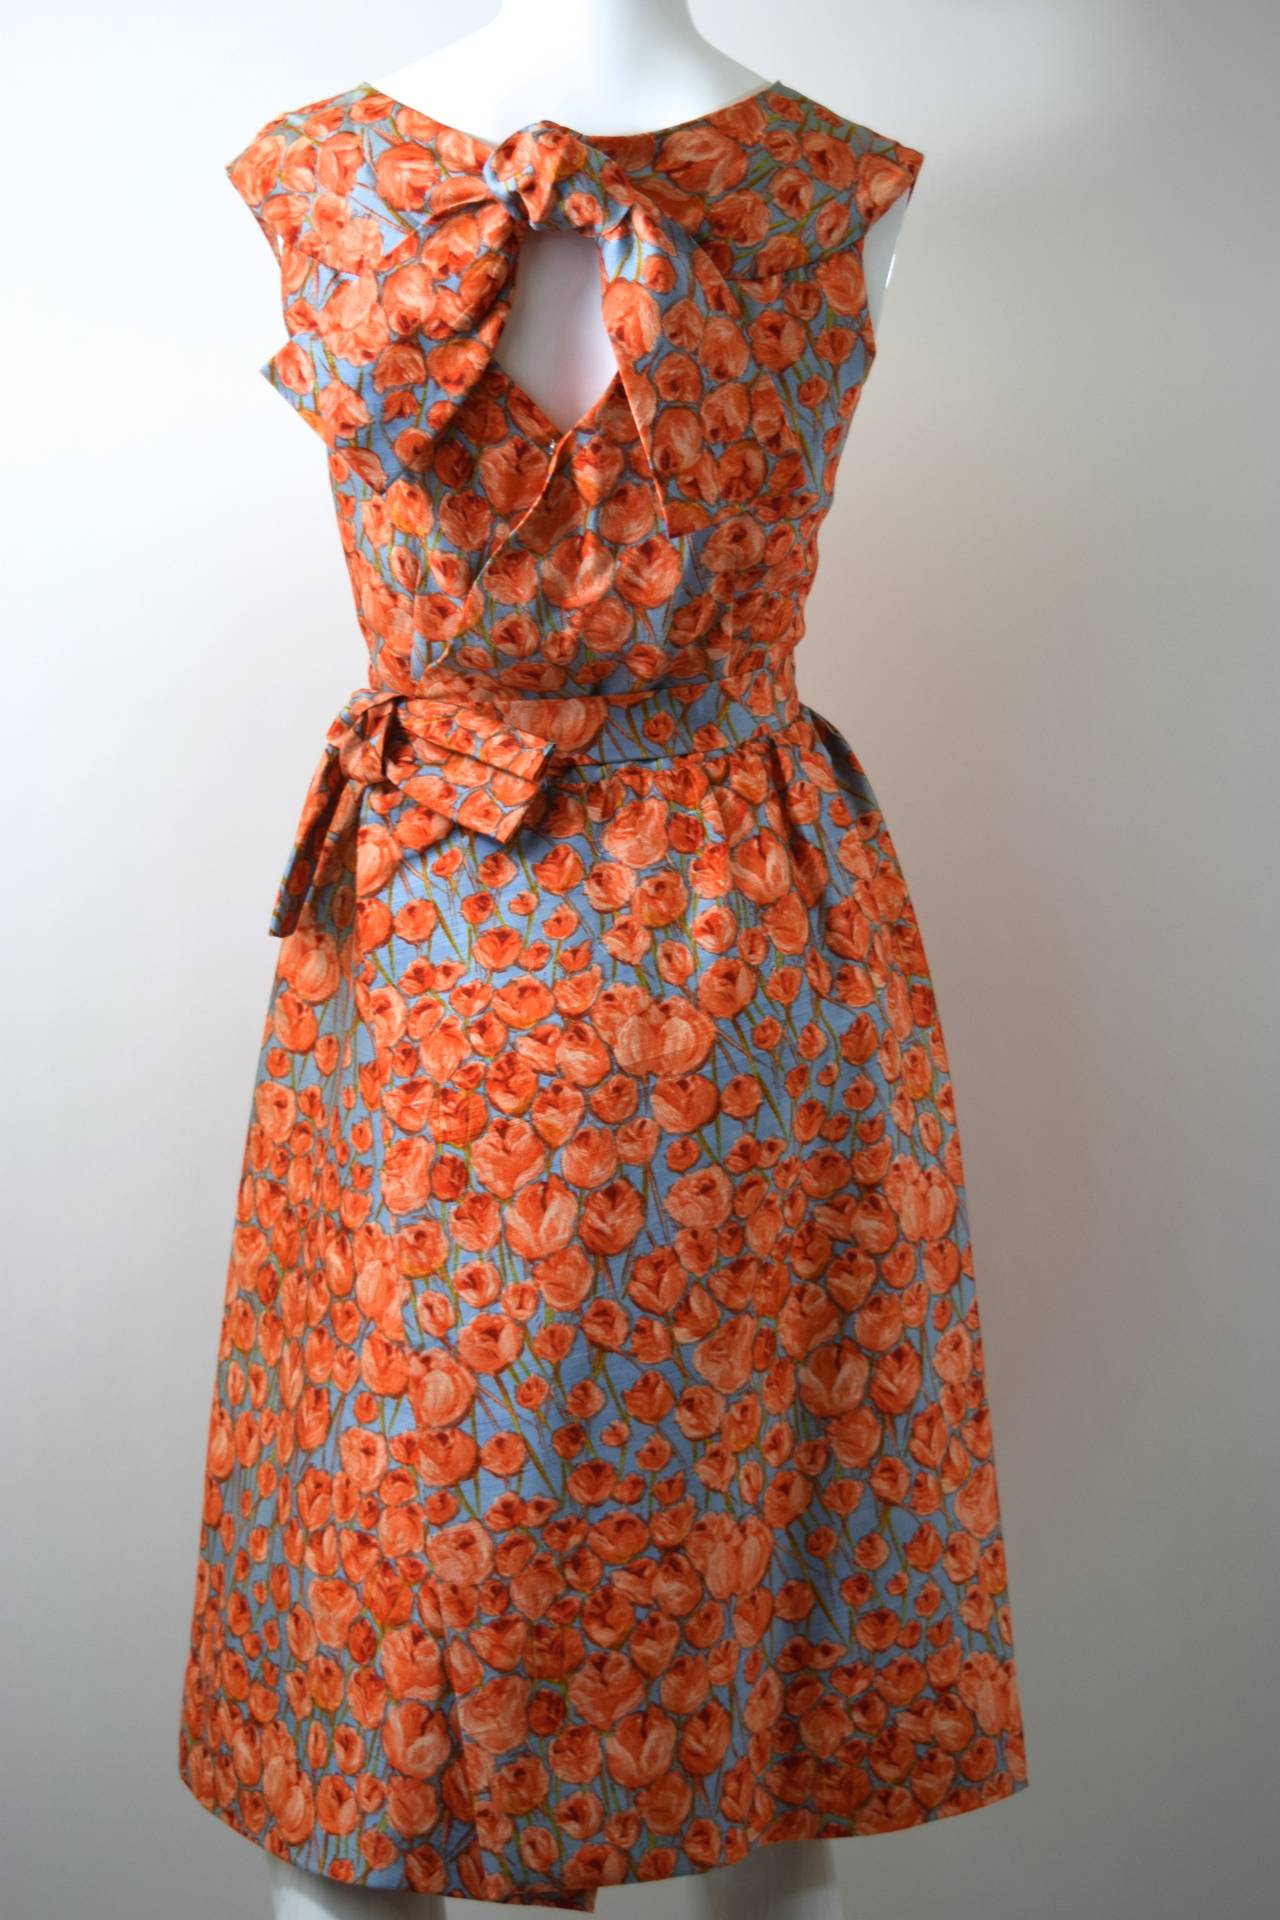 Brown 1950s Hattie Carnegie bow detail & floral print silk dress